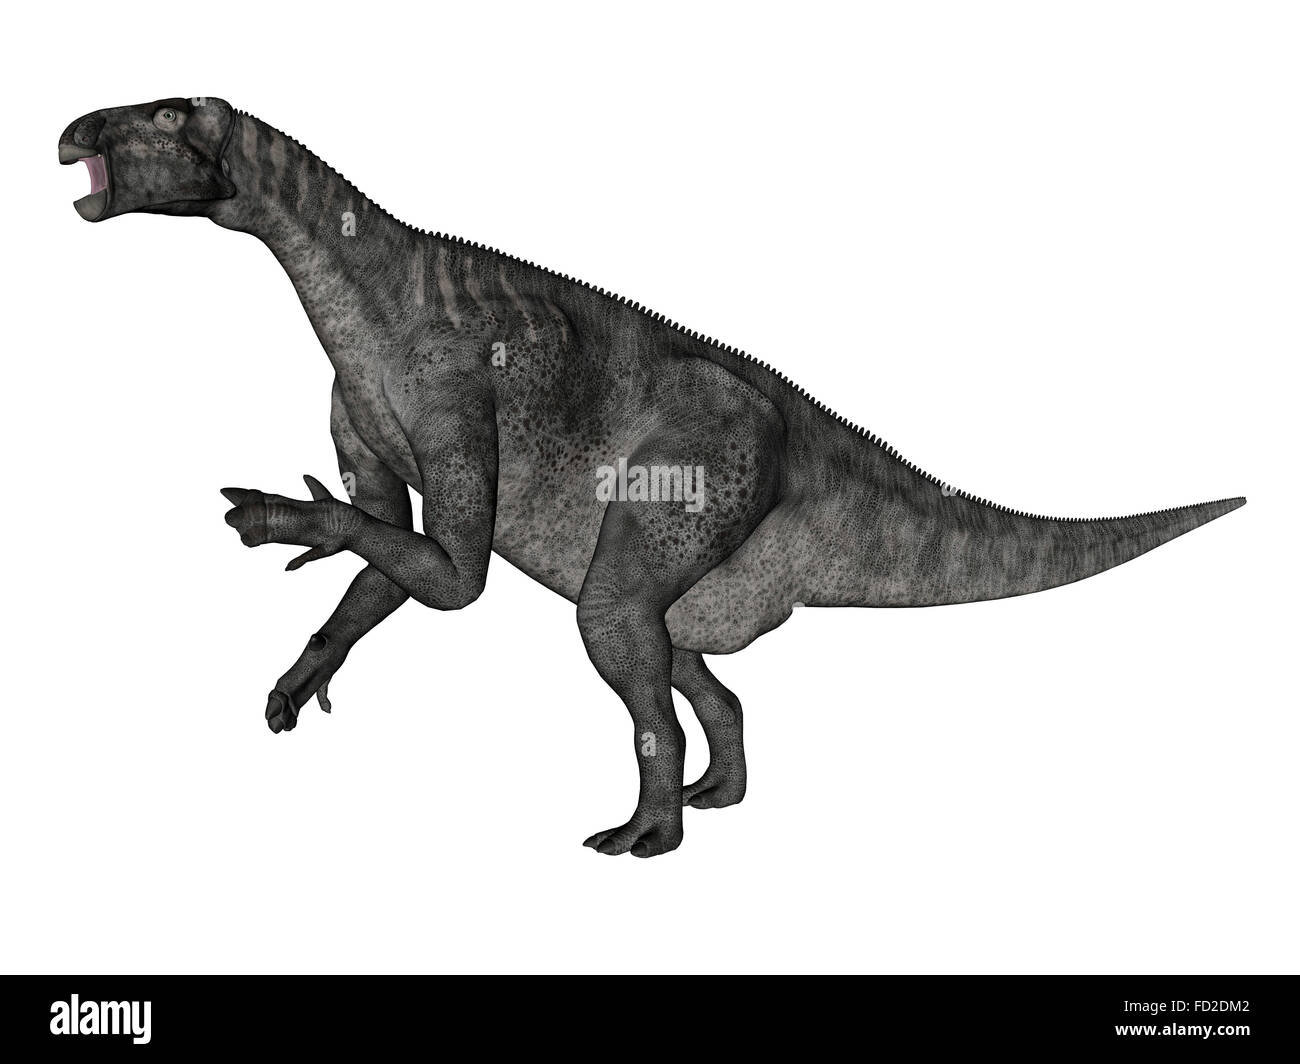 Iguanodon dinosaur rearing up, white background. Stock Photo